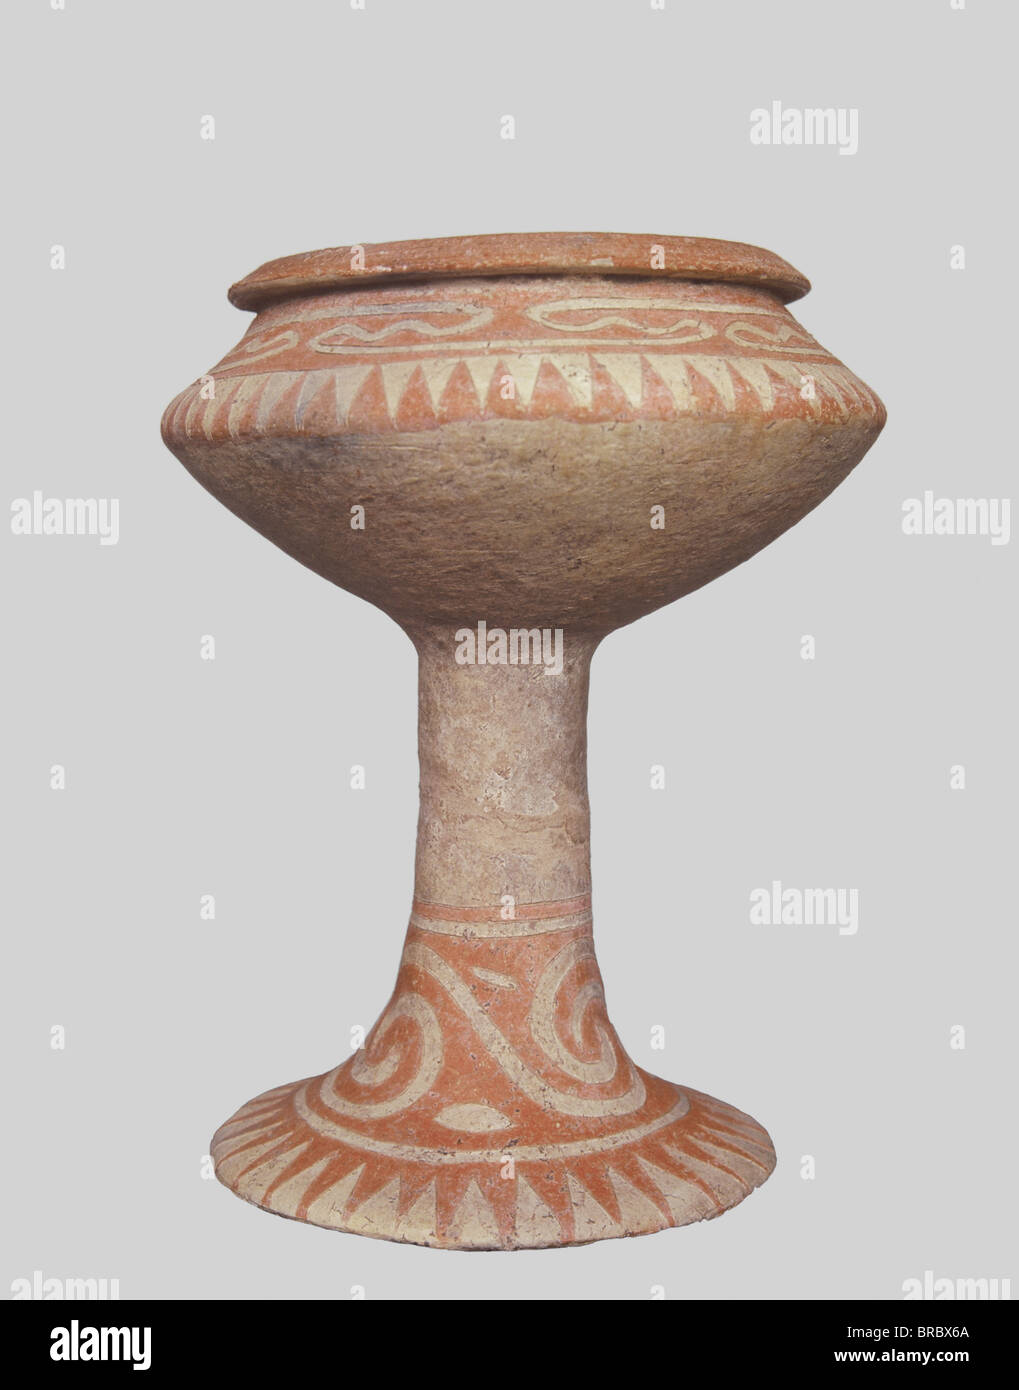 La préhistoire Ban Chiang Suan Pakkad poterie, Museum collection, Bangkok, Thaïlande Banque D'Images